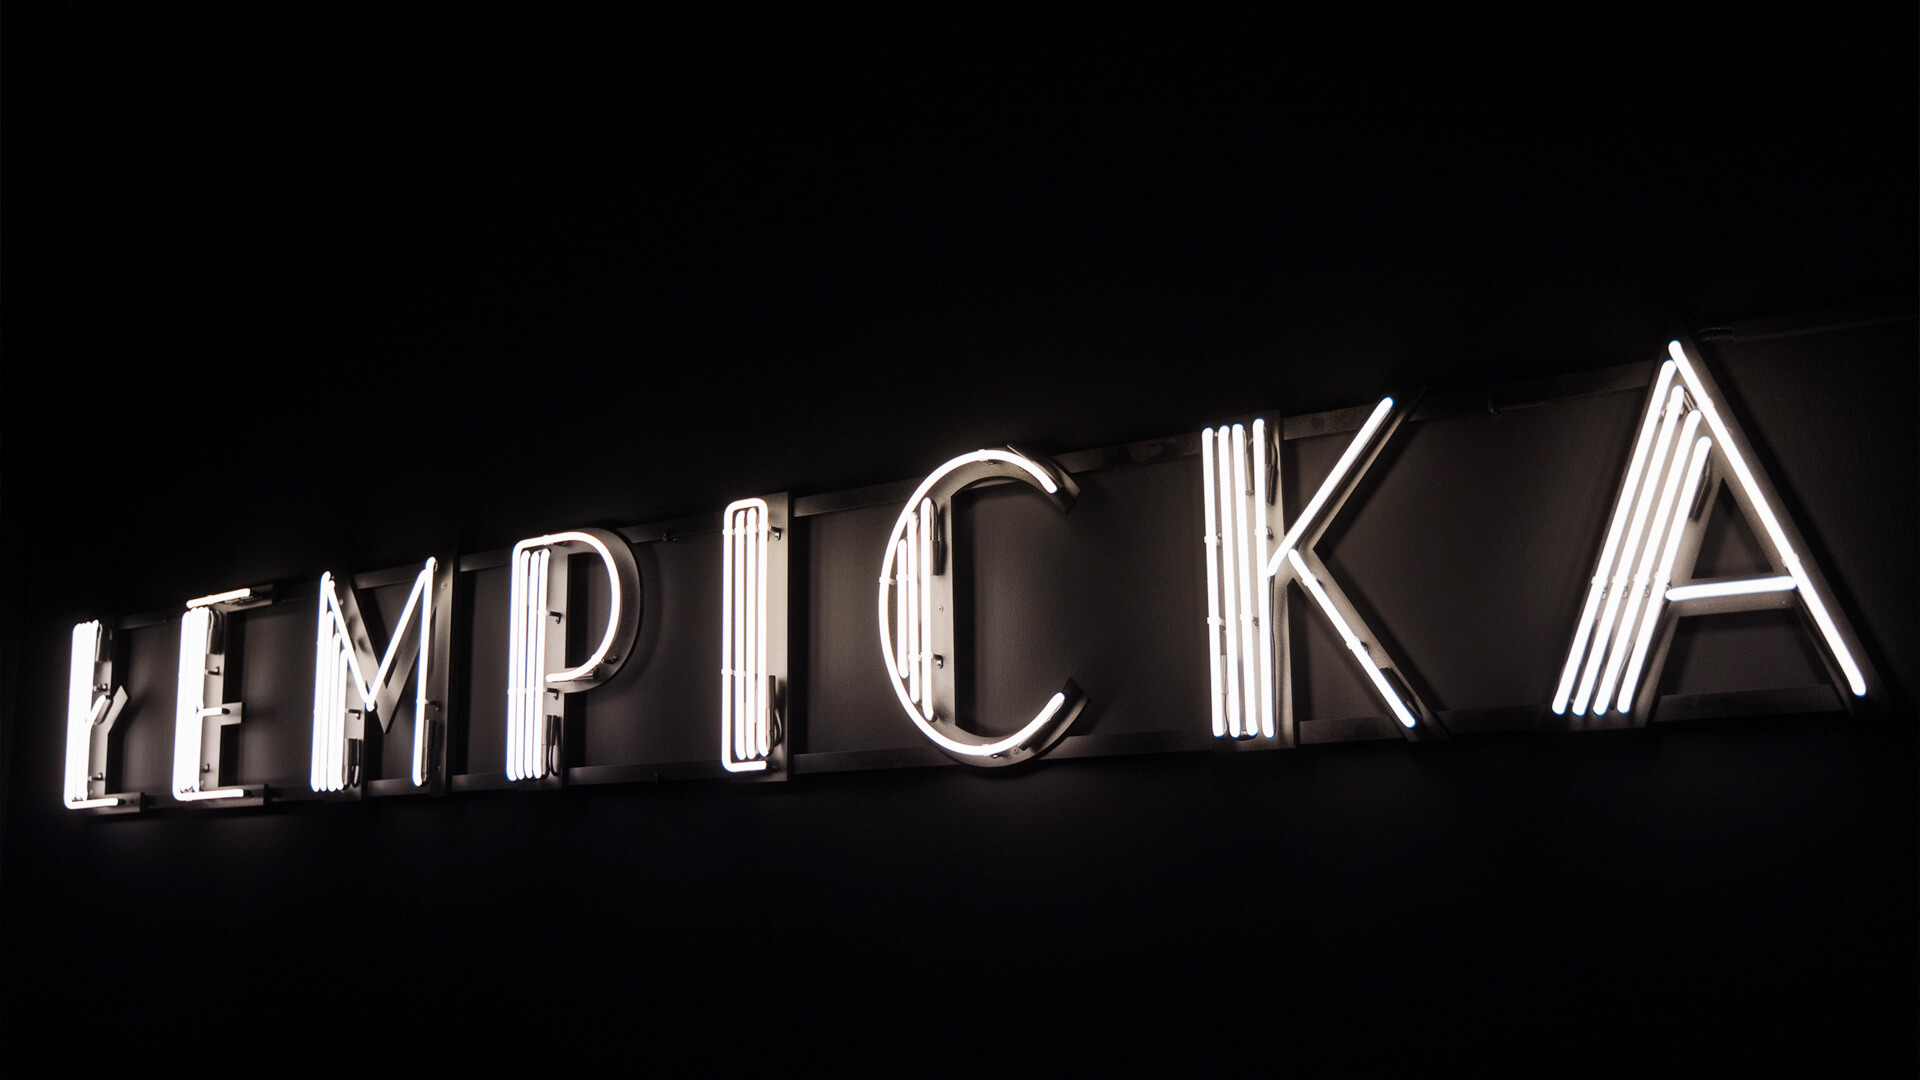 Neon Tamara Lempicka - Ausstellung mit Leuchtreklame im Krakauer Museum